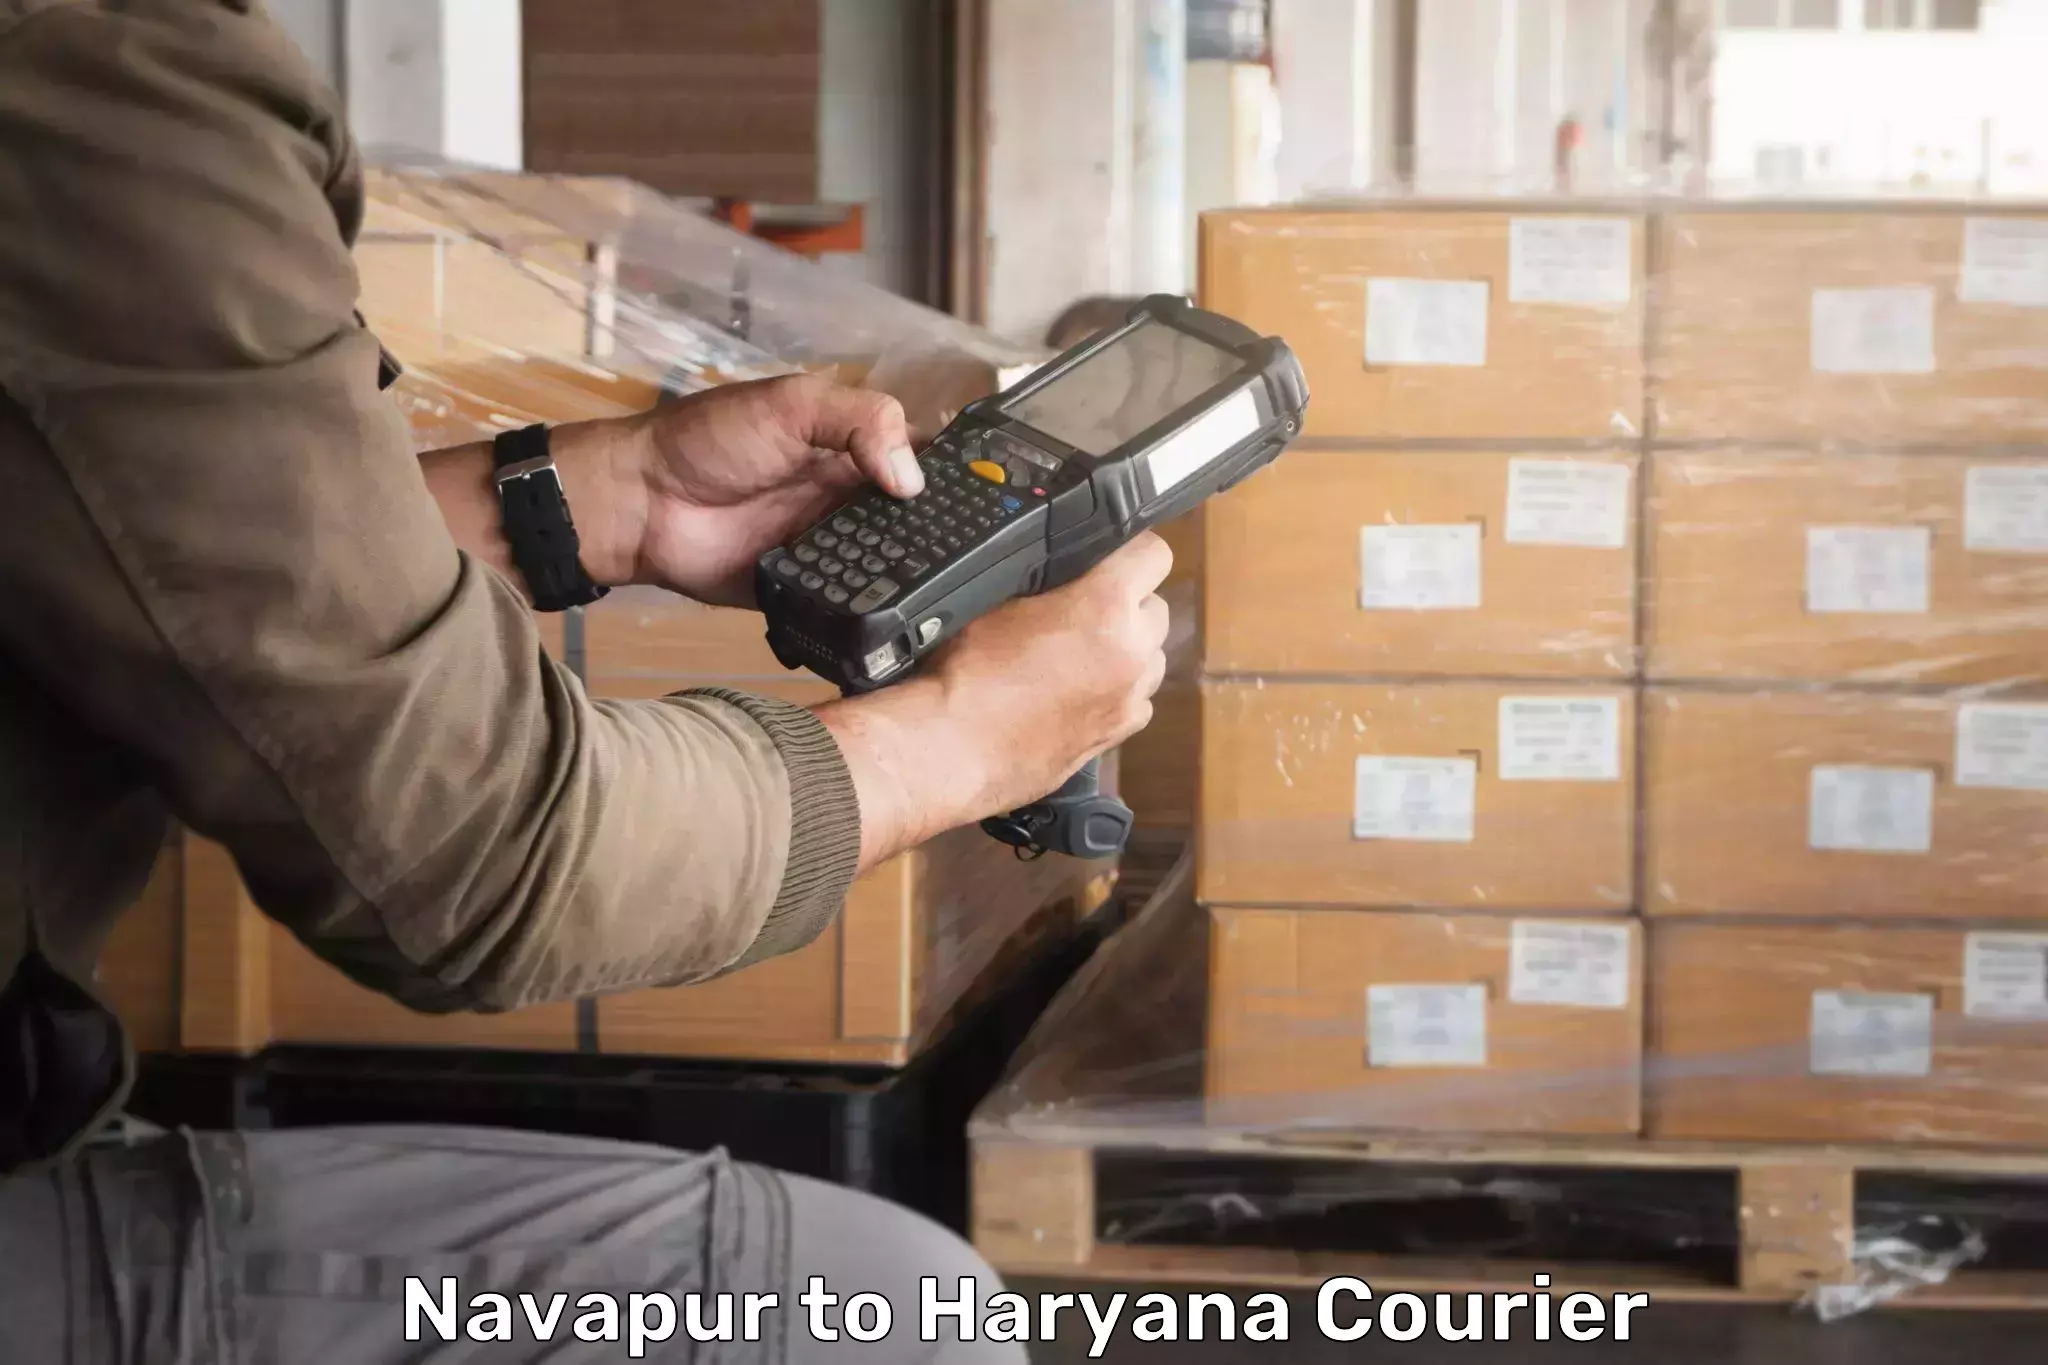 Express courier facilities Navapur to Yamuna Nagar